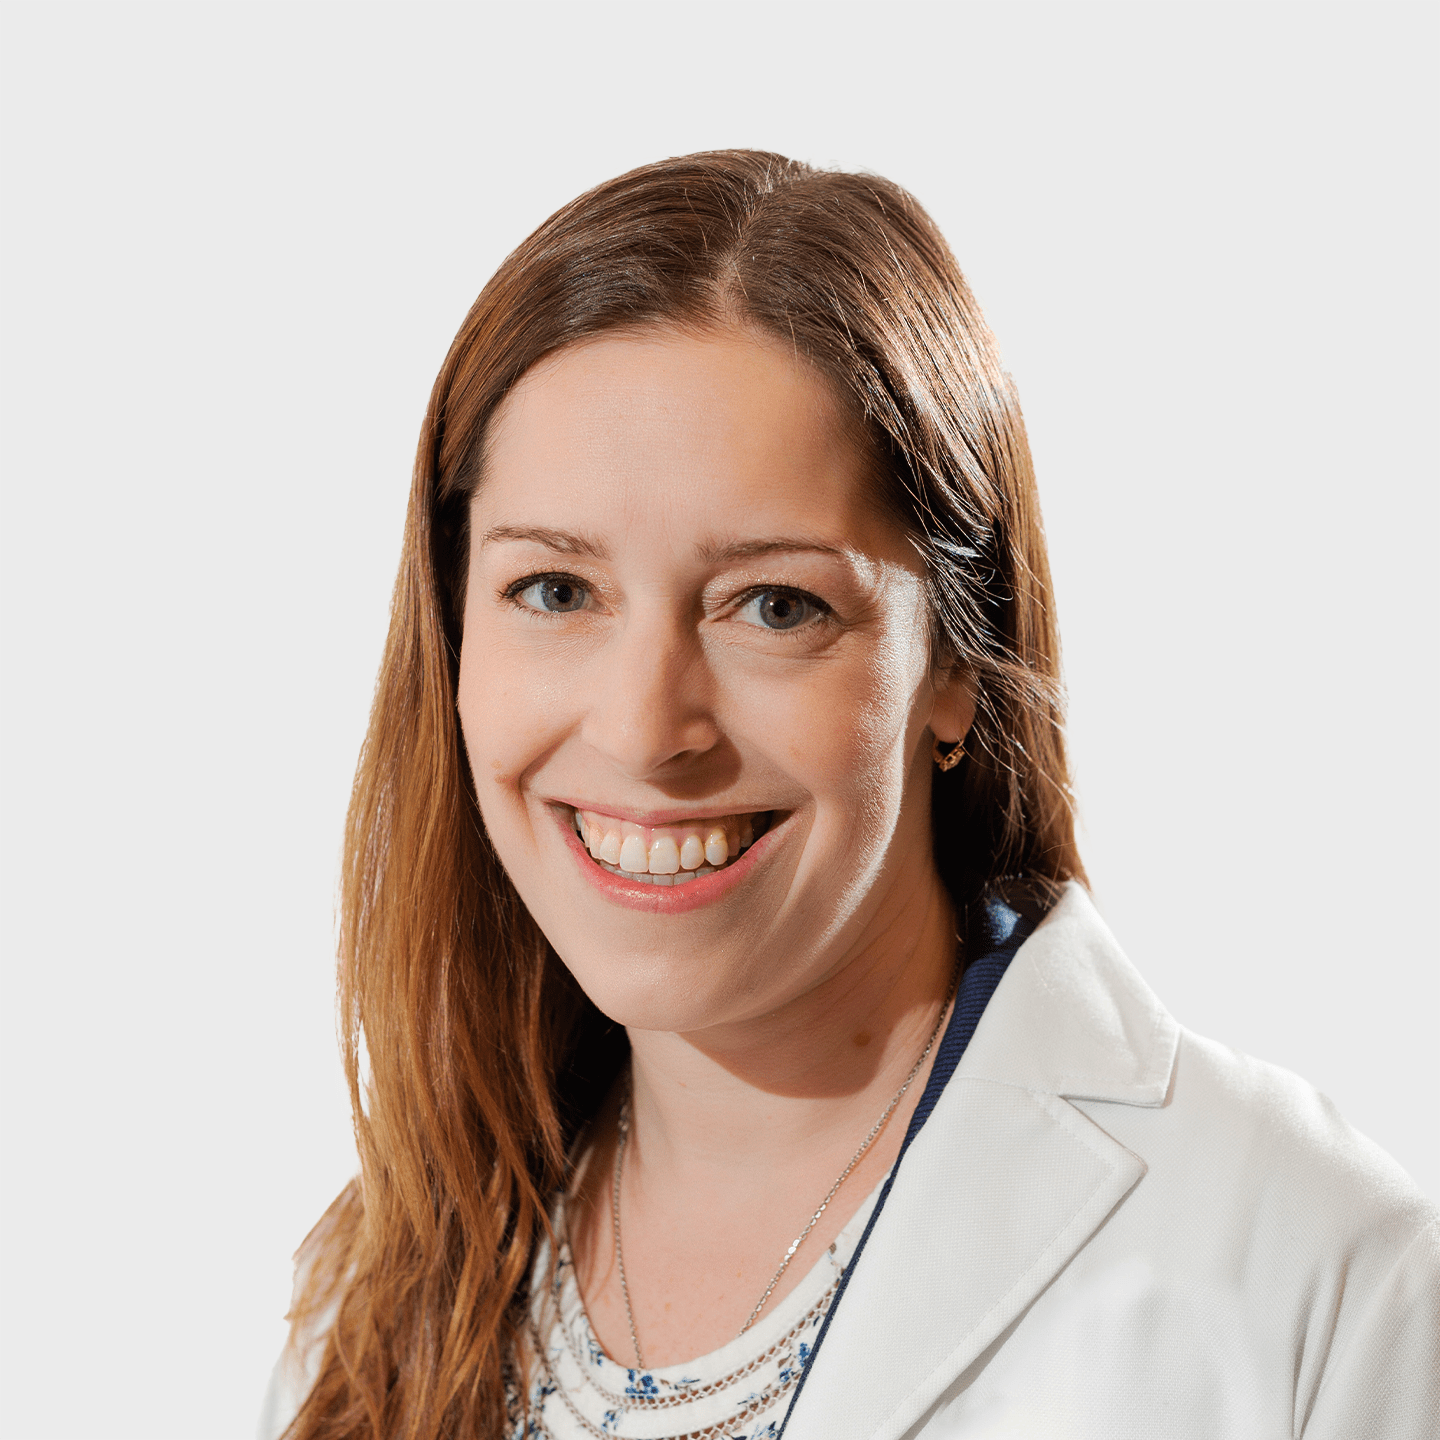 Physician Spotlight on Dr. Amy Wasterlain